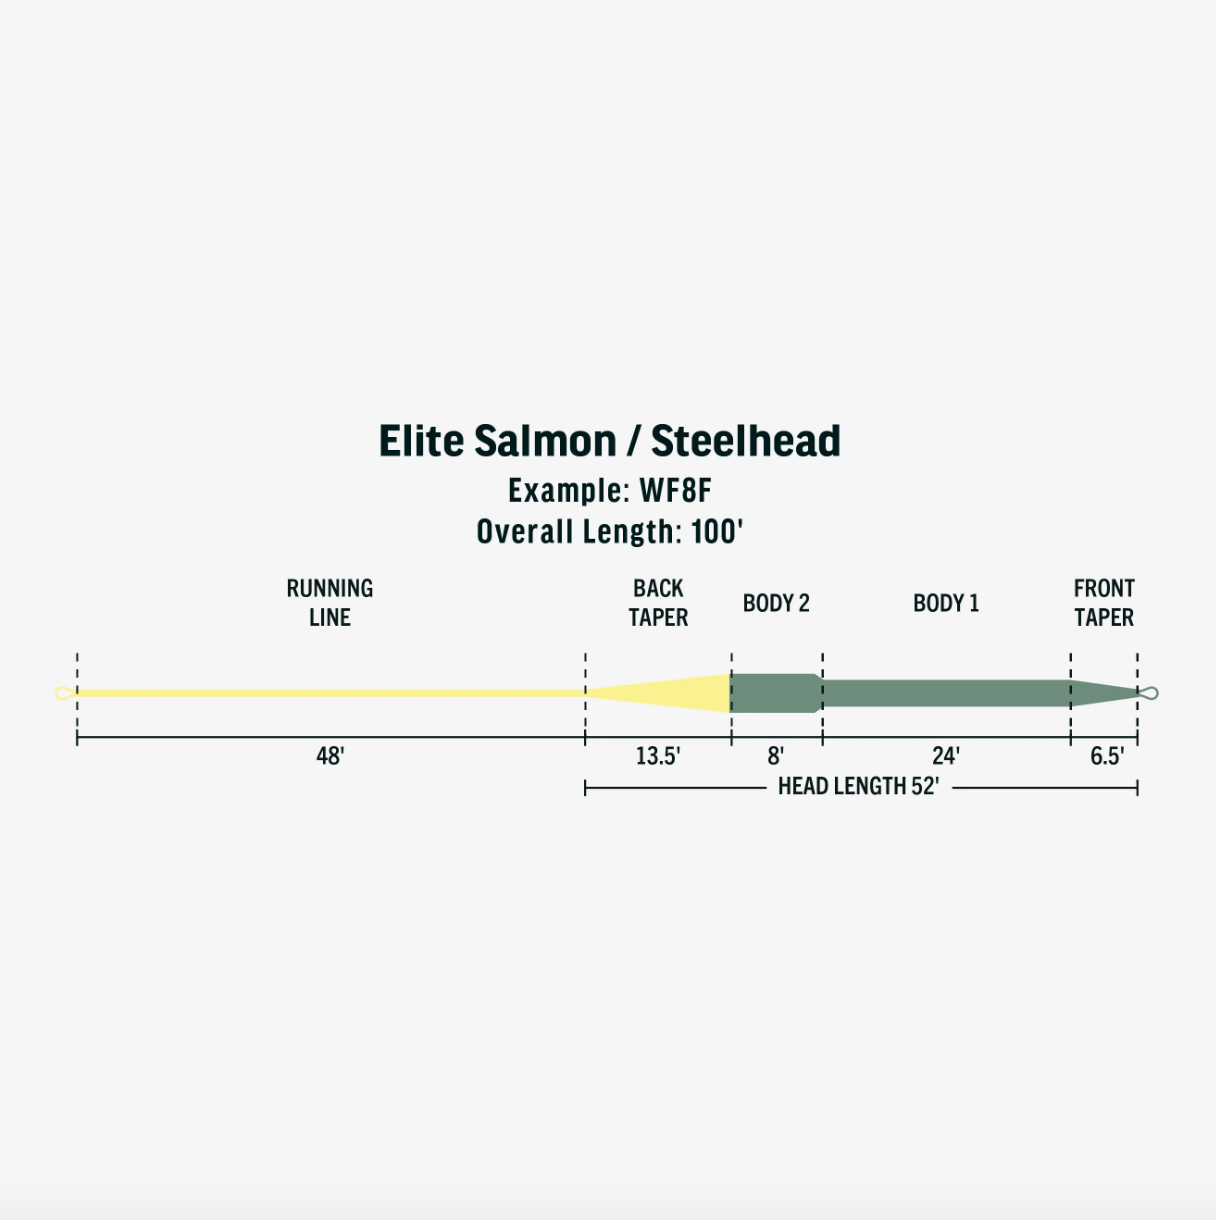 Línea de mosca Rio Elite salmón/steelhead